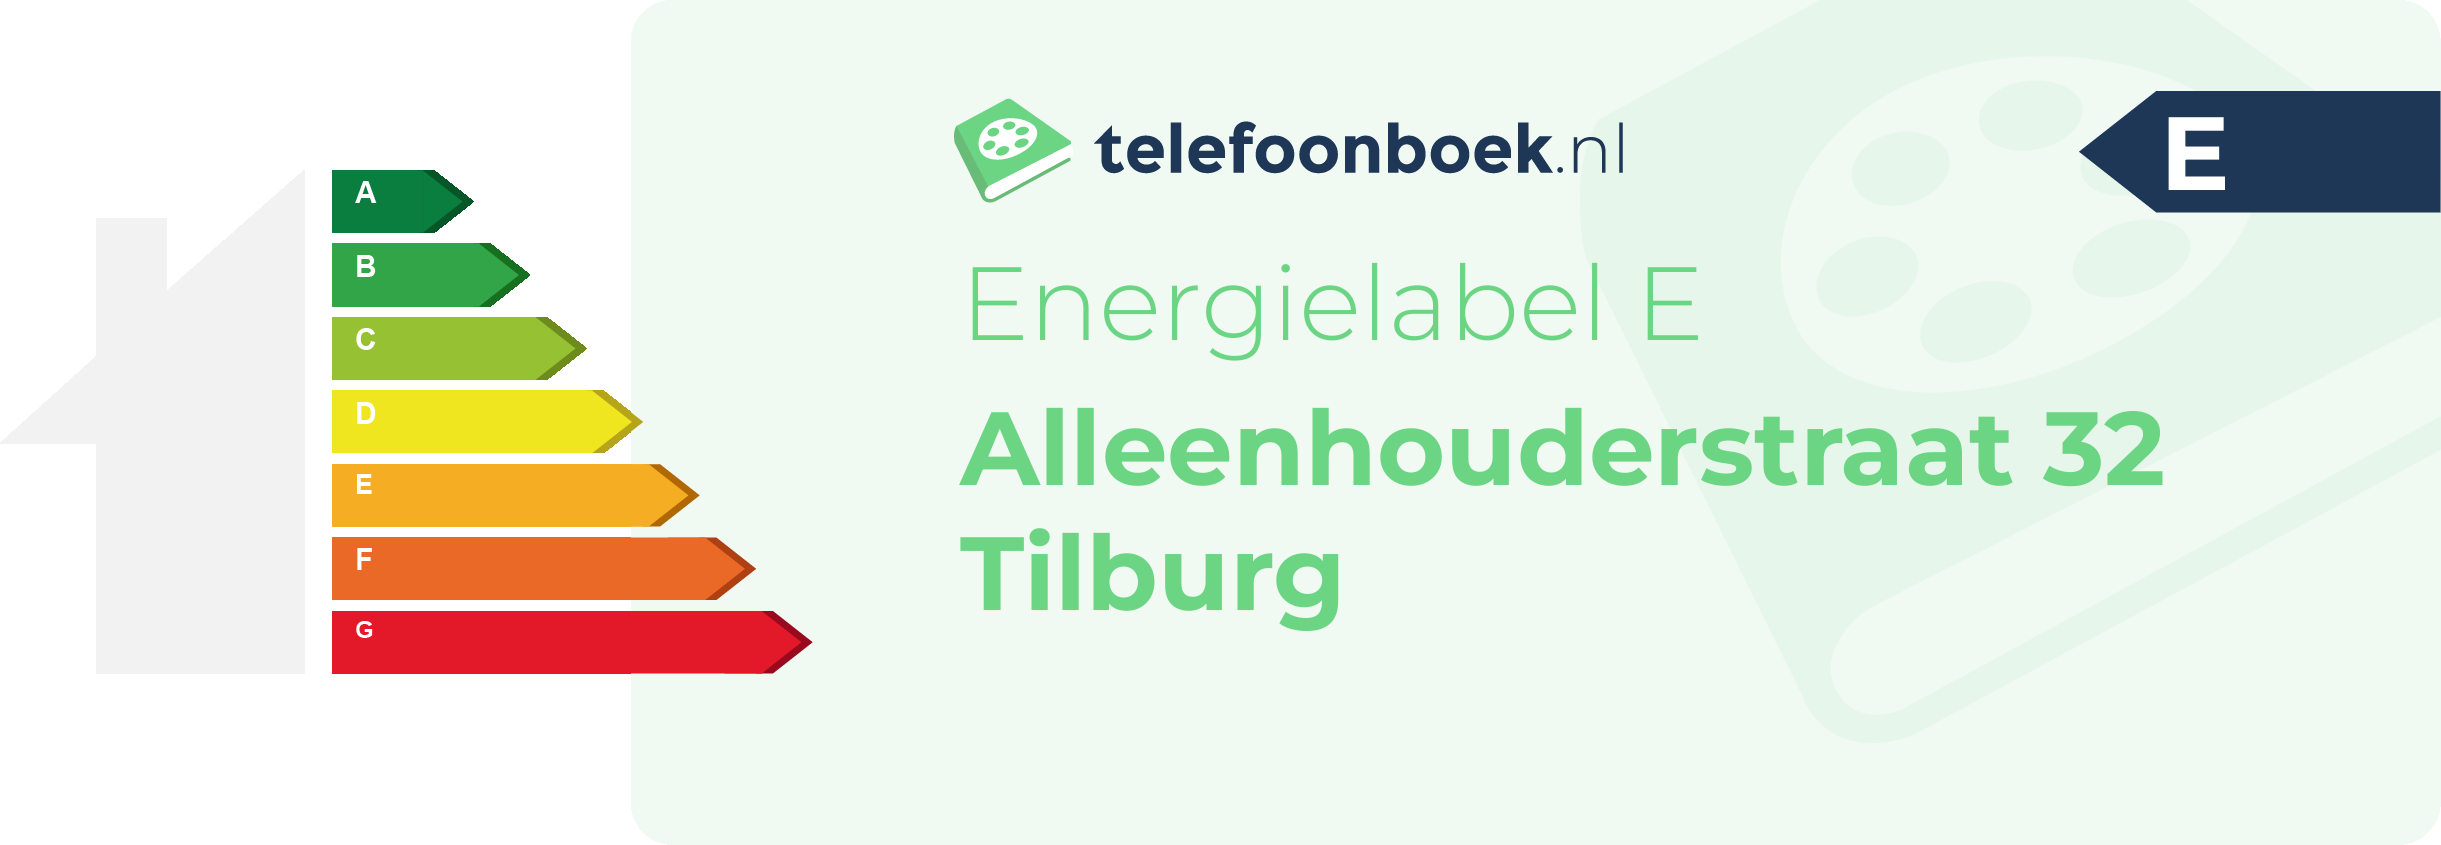 Energielabel Alleenhouderstraat 32 Tilburg